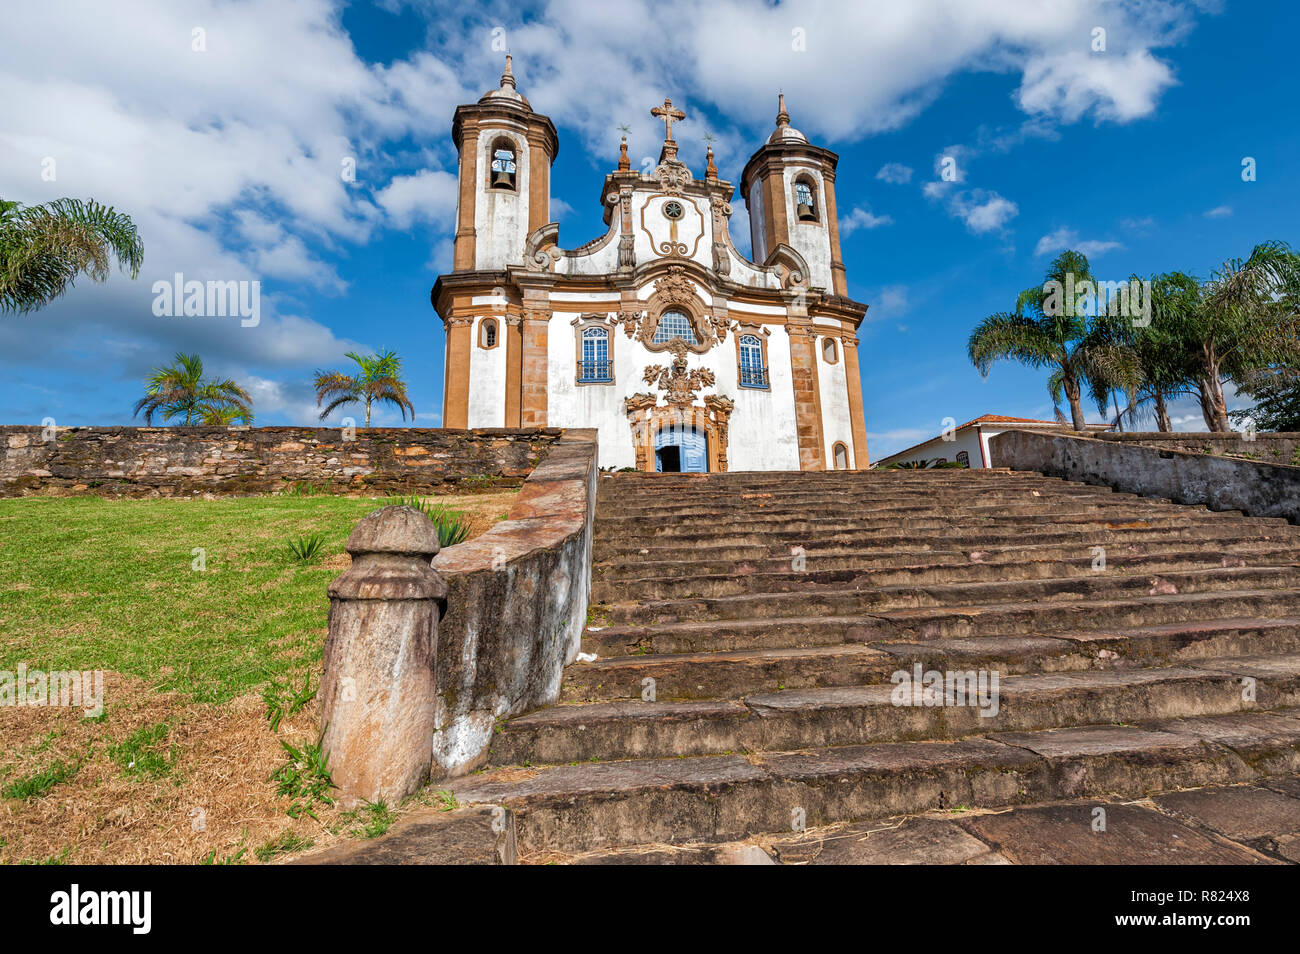 Nossa Senhora do Carmo Kirche im historischen Zentrum von Ouro Preto, ein UNESCO-Weltkulturerbe, Ouro Preto, Minas Gerais Stockfoto